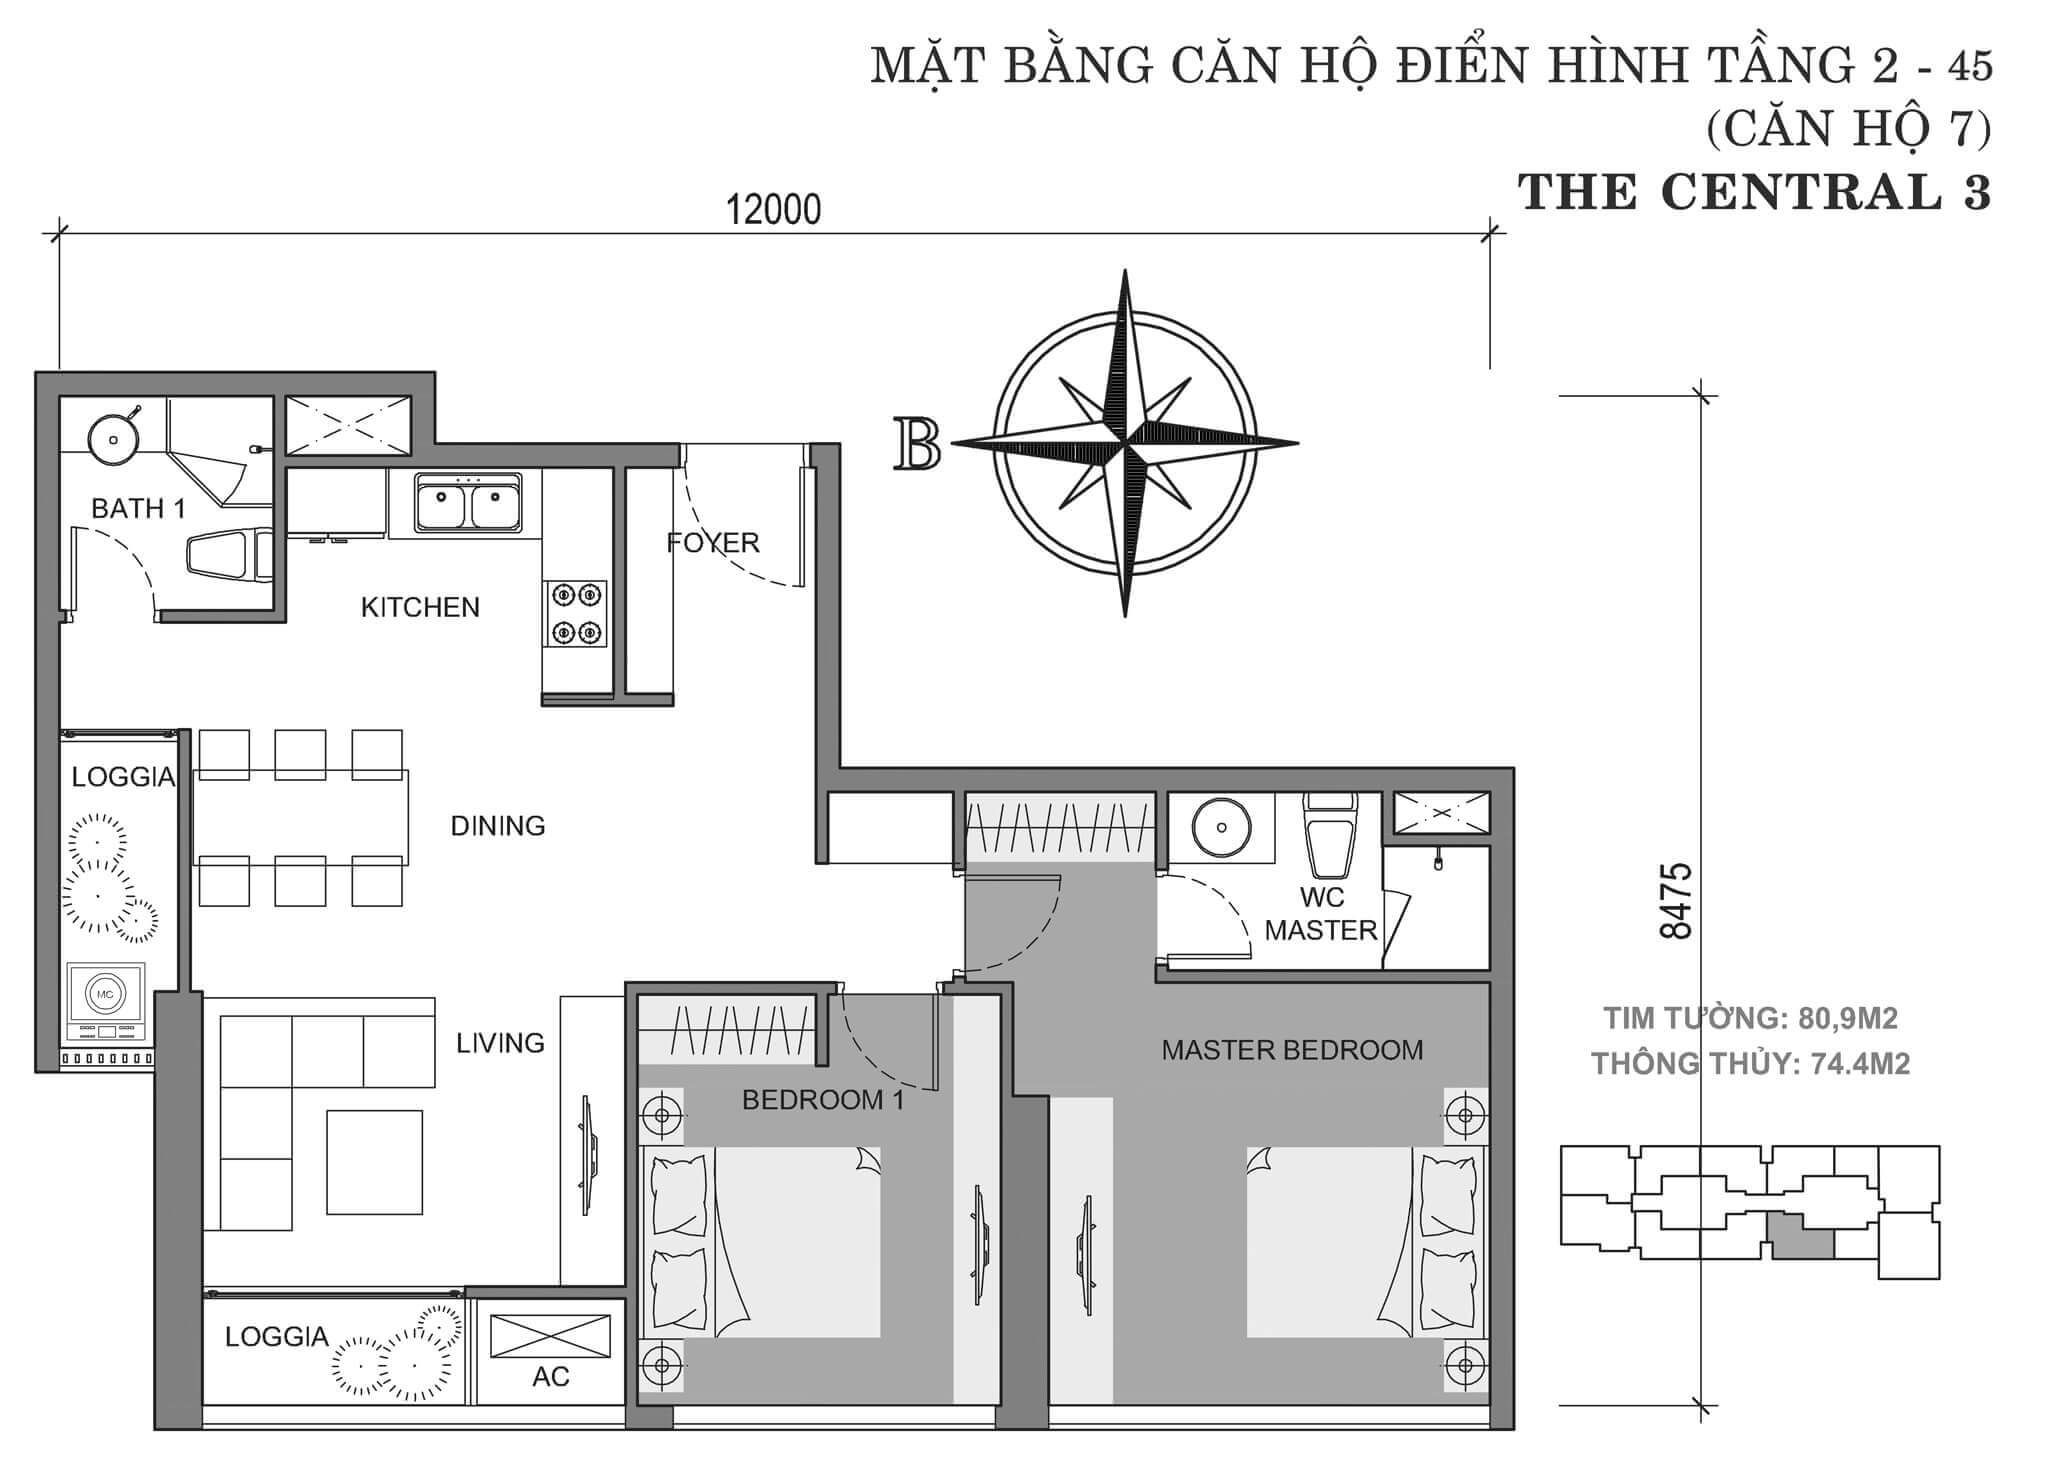 layout căn hộ số 7 tòa Central 3 tầng 2-45  